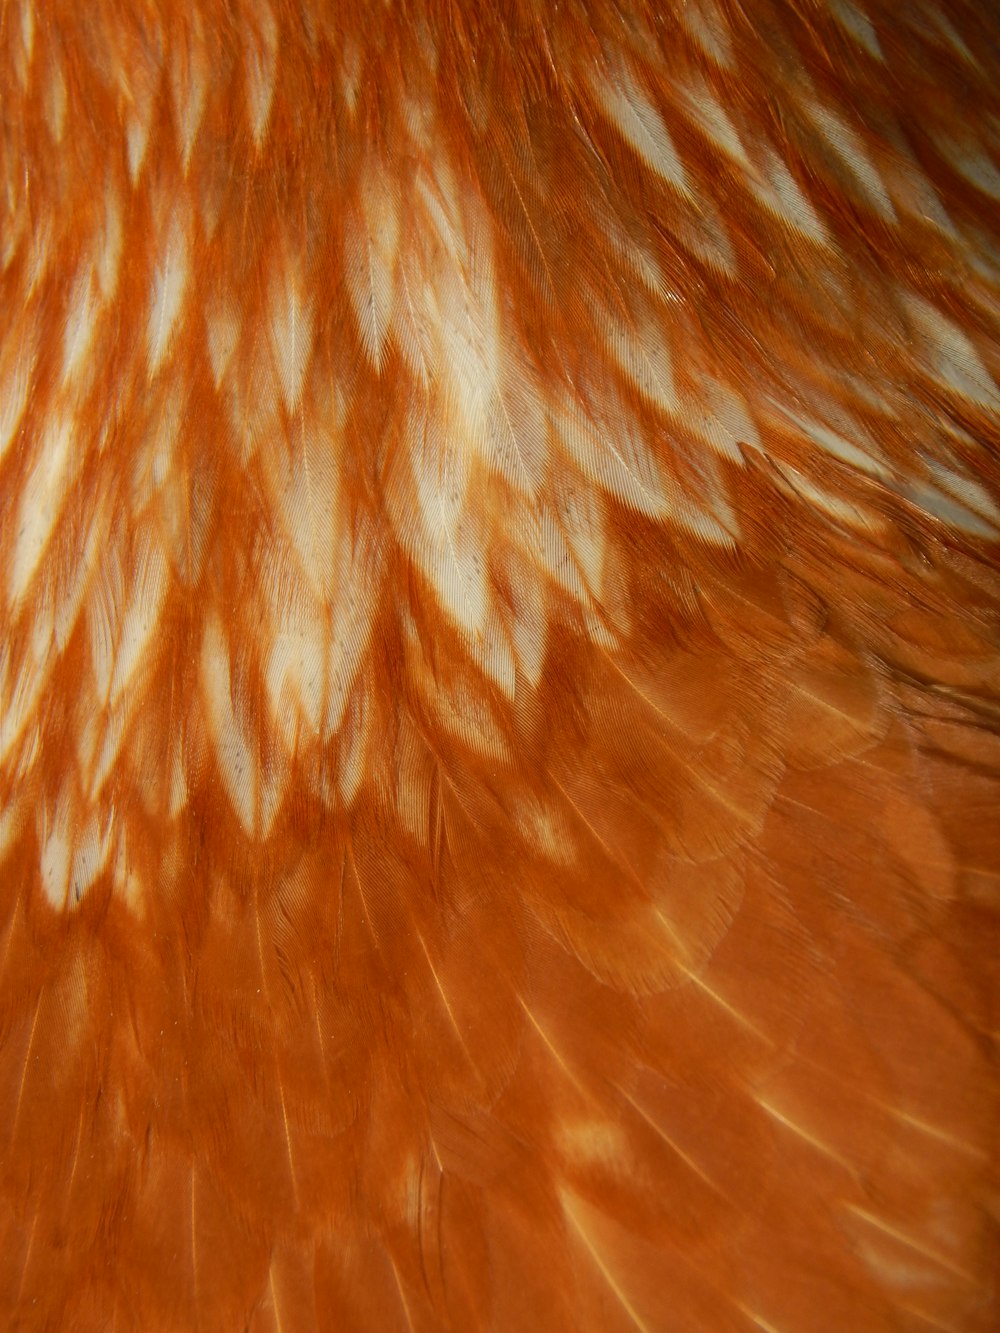 Un primer plano de las plumas de un pájaro naranja y blanco